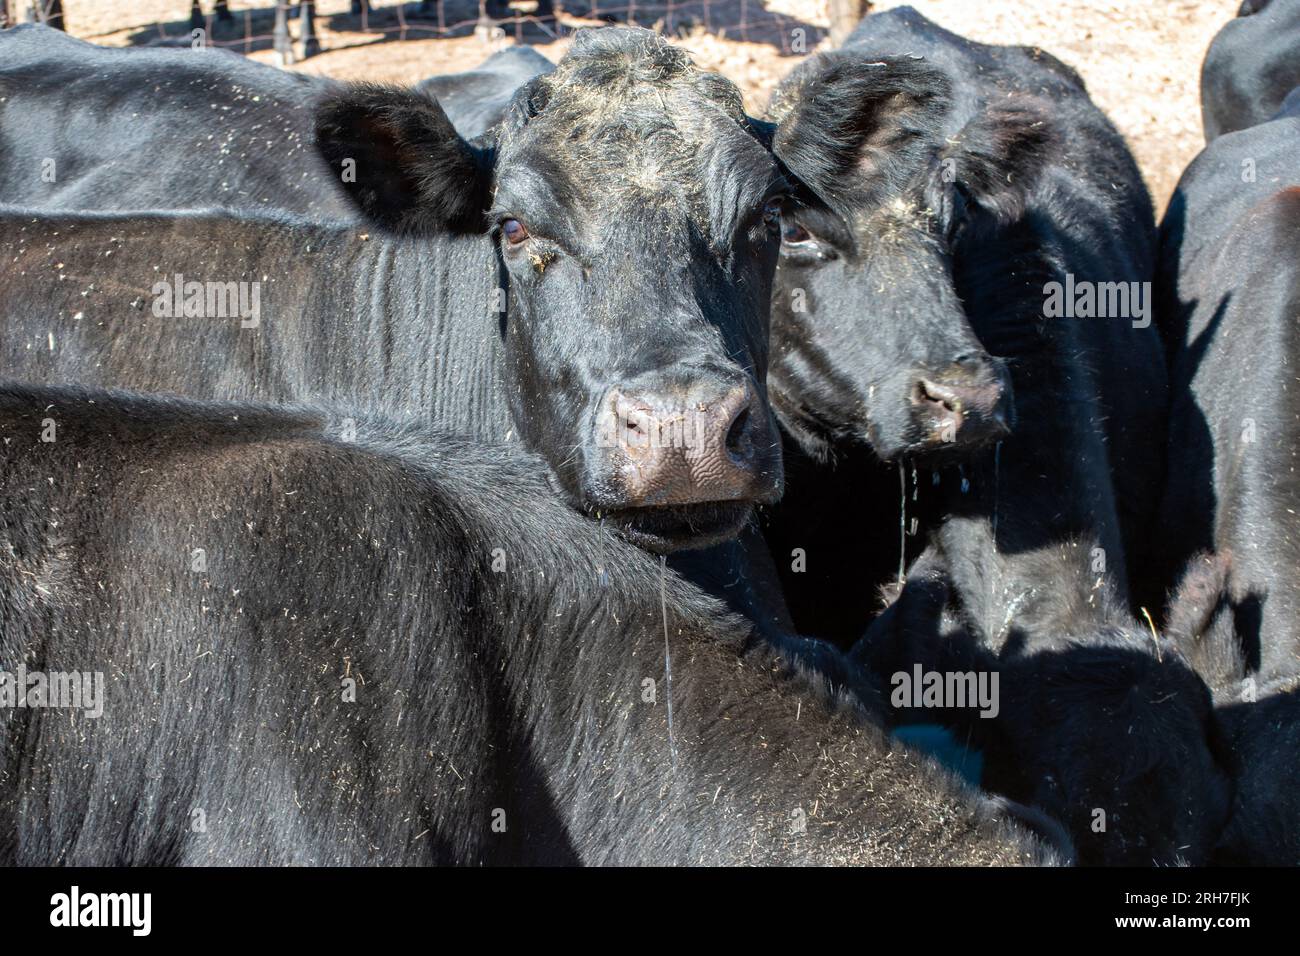 Una mirada detallada de cerca a las fosas nasales de una vaca angus negra rodeada de más ganado vacuno. Foto de stock